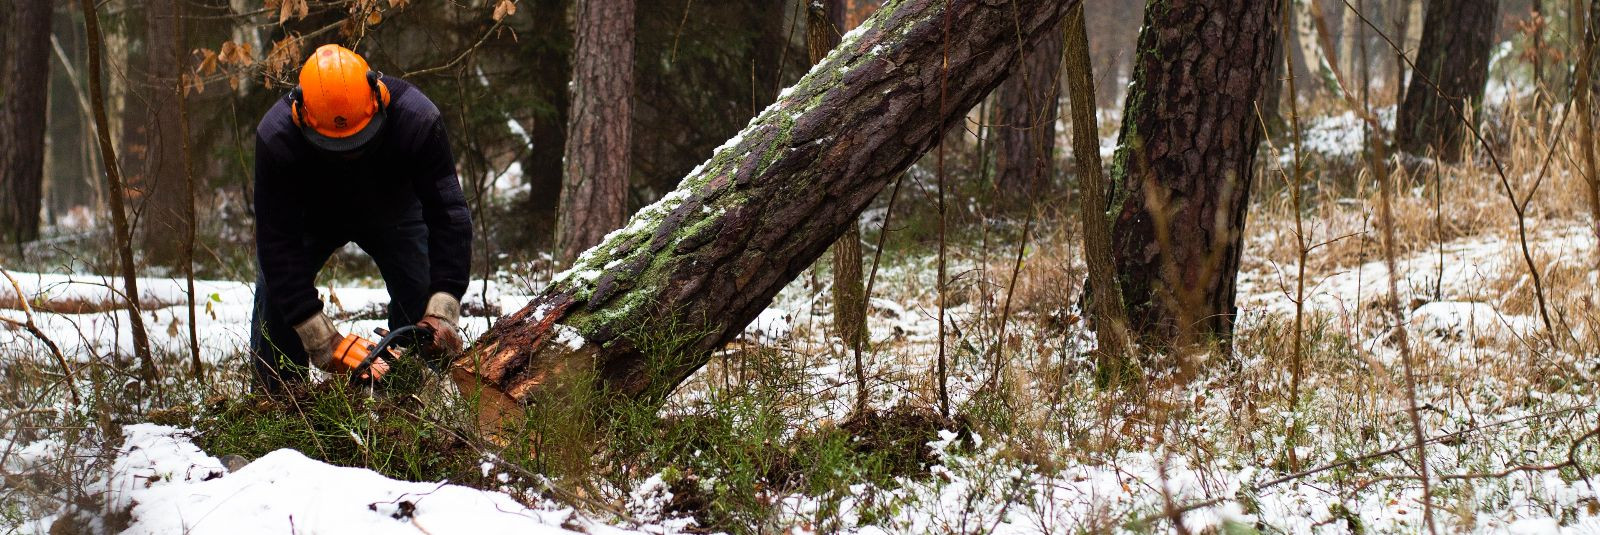 Kolmandikku Eesti erametsadest ei majandata üldse – see tähendab, et mets on jäetud omapäi. Peamiseks...